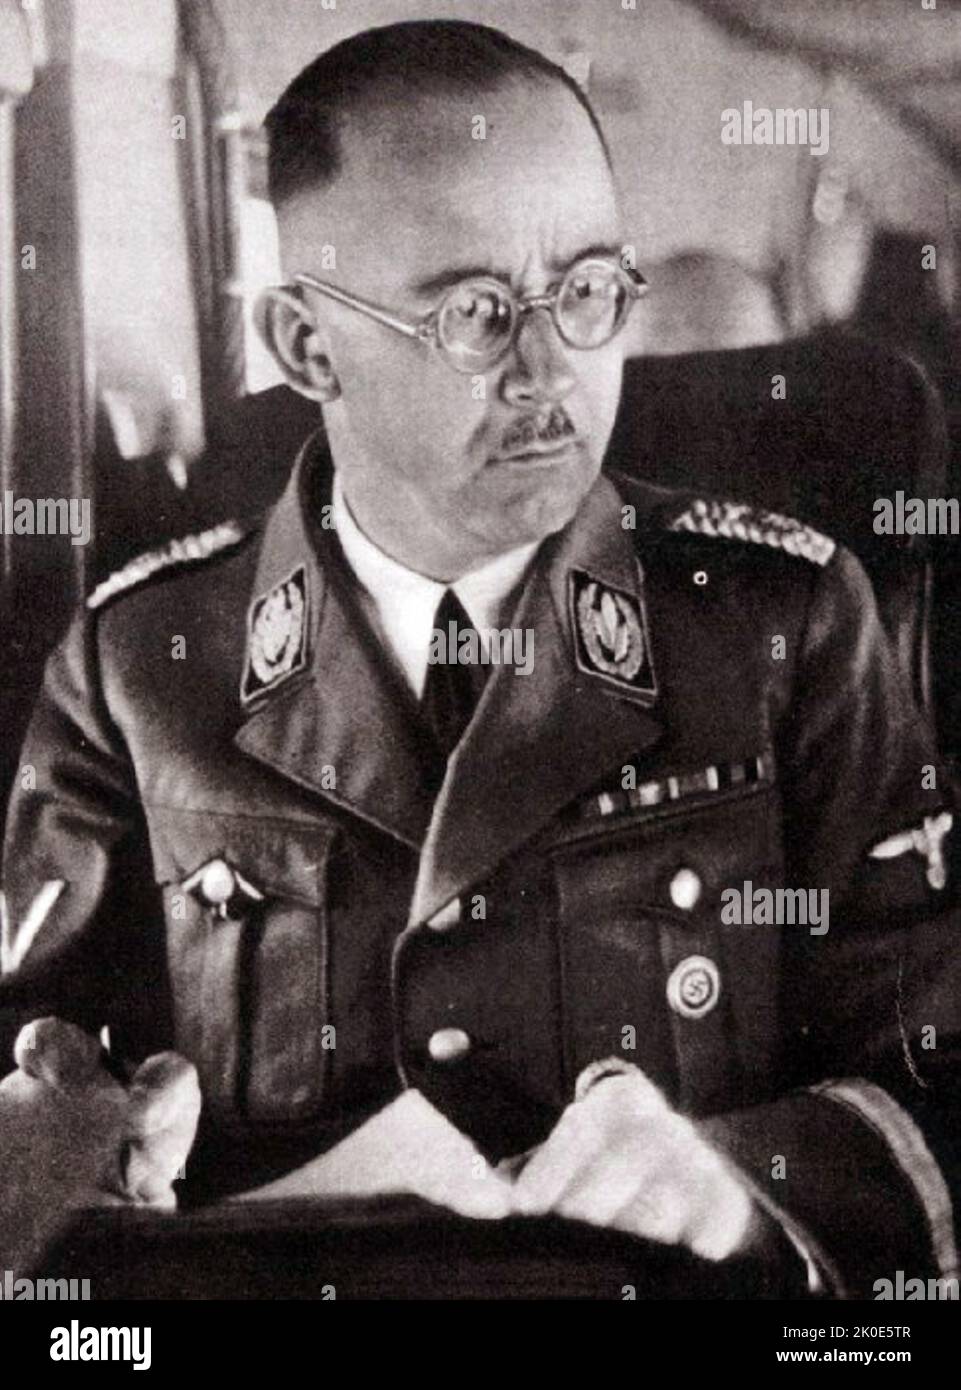 Heinrich Luitpold Himmler (1900 - 1945) Reichsführer der Schutzstaffel (SS) und ein führendes Mitglied der NSDAP. Himmler war einer der mächtigsten Männer in Nazi-Deutschland und ein Hauptarchitekt des Holocaust. Stockfoto